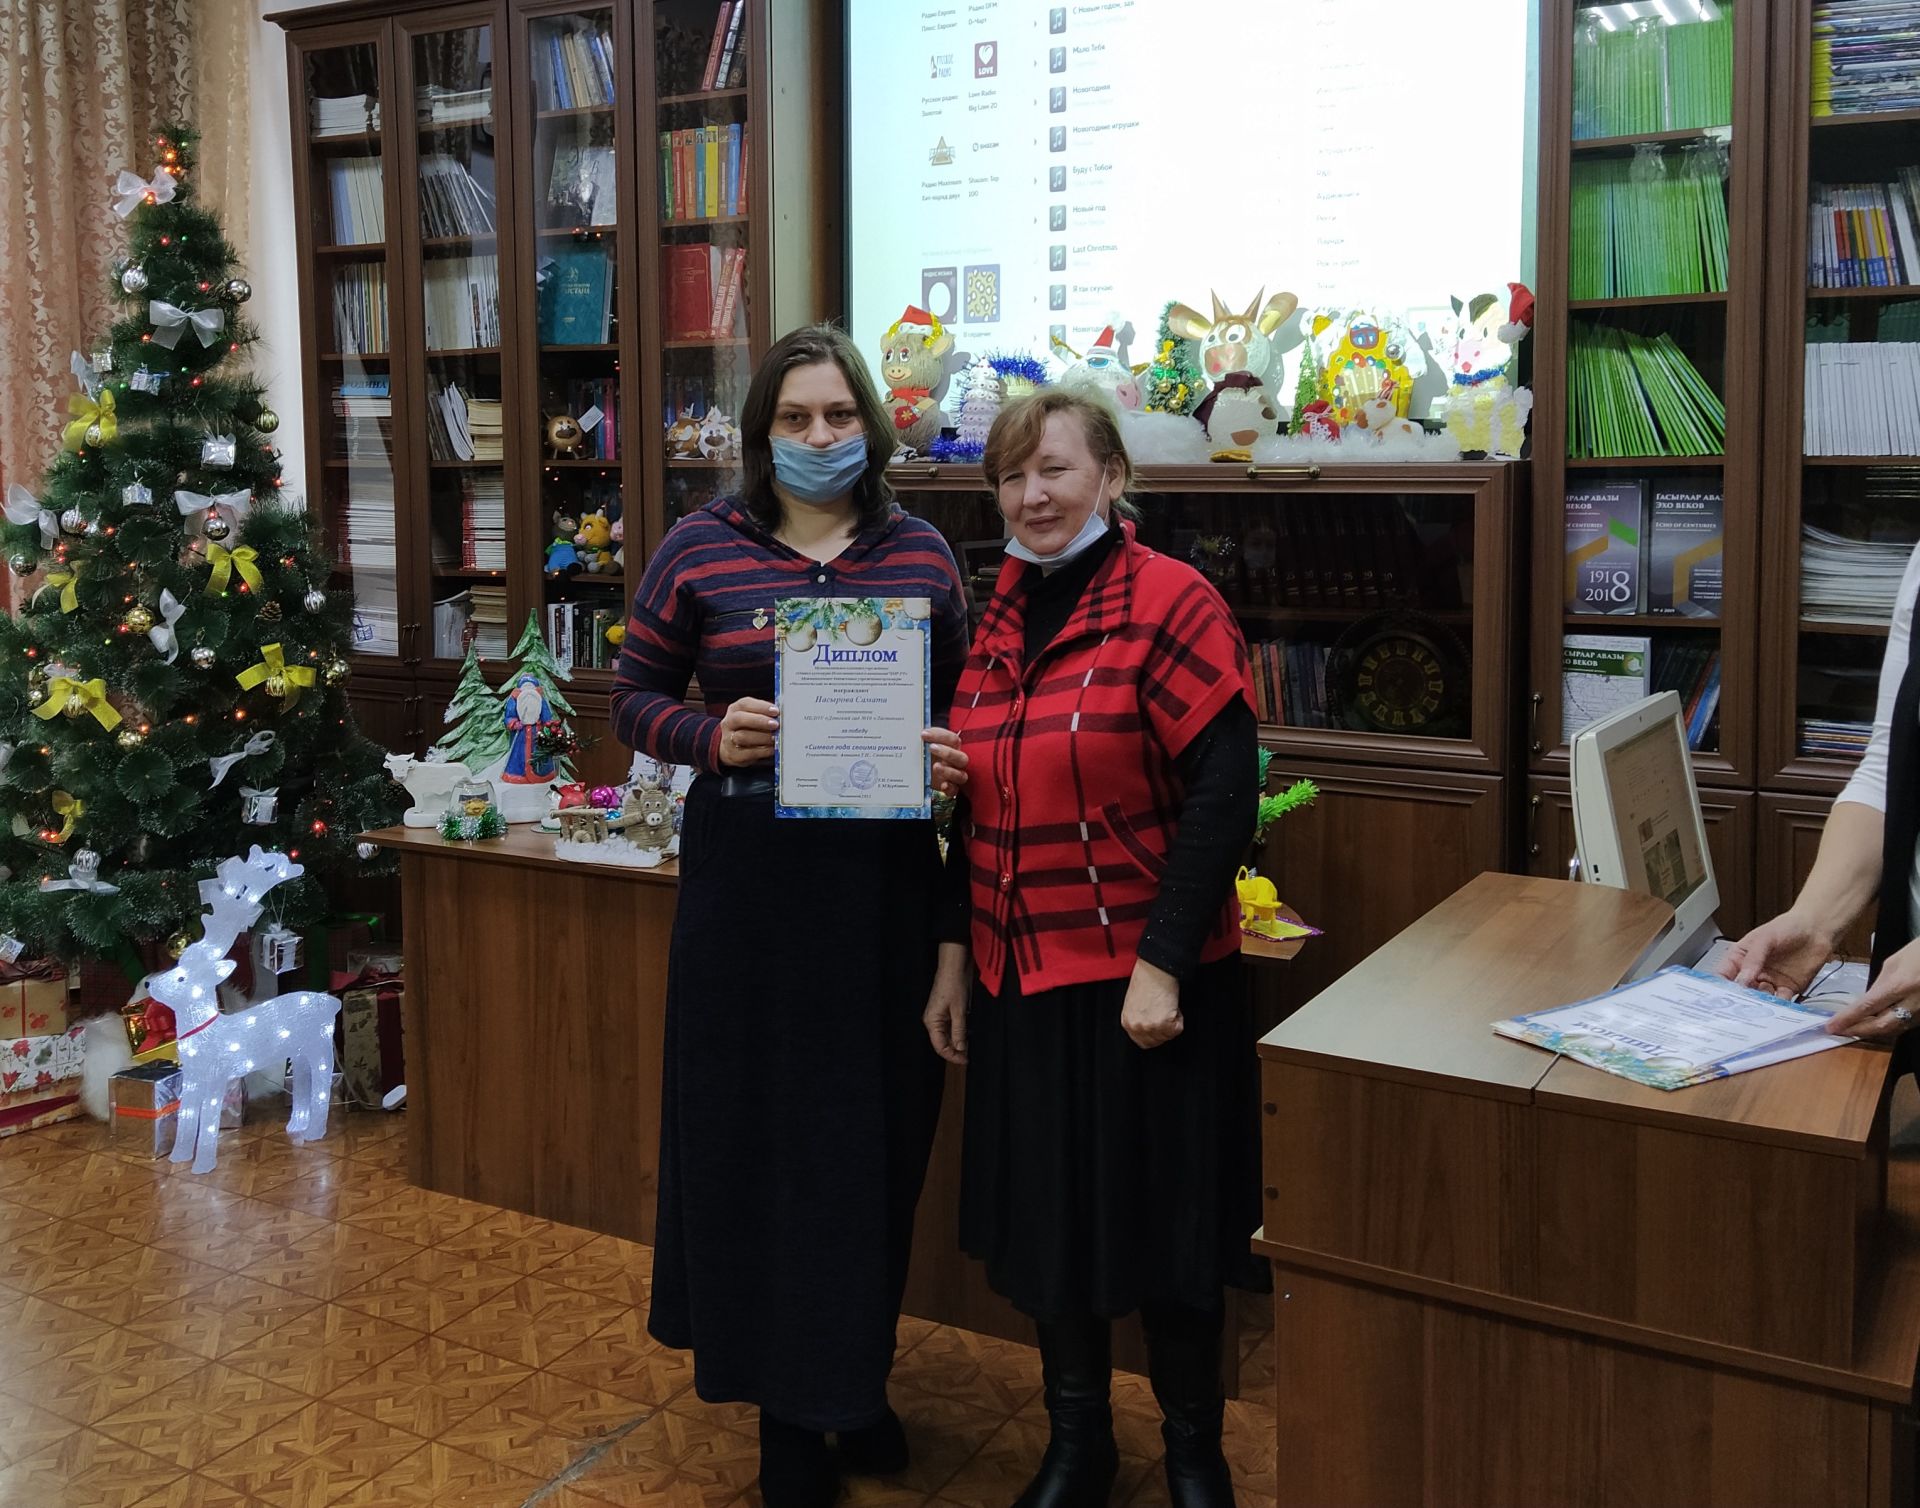 В Чистопольской библиотеке подвели итоги конкурса «Символ года своими руками» (ФОТОРЕПОРТАЖ)